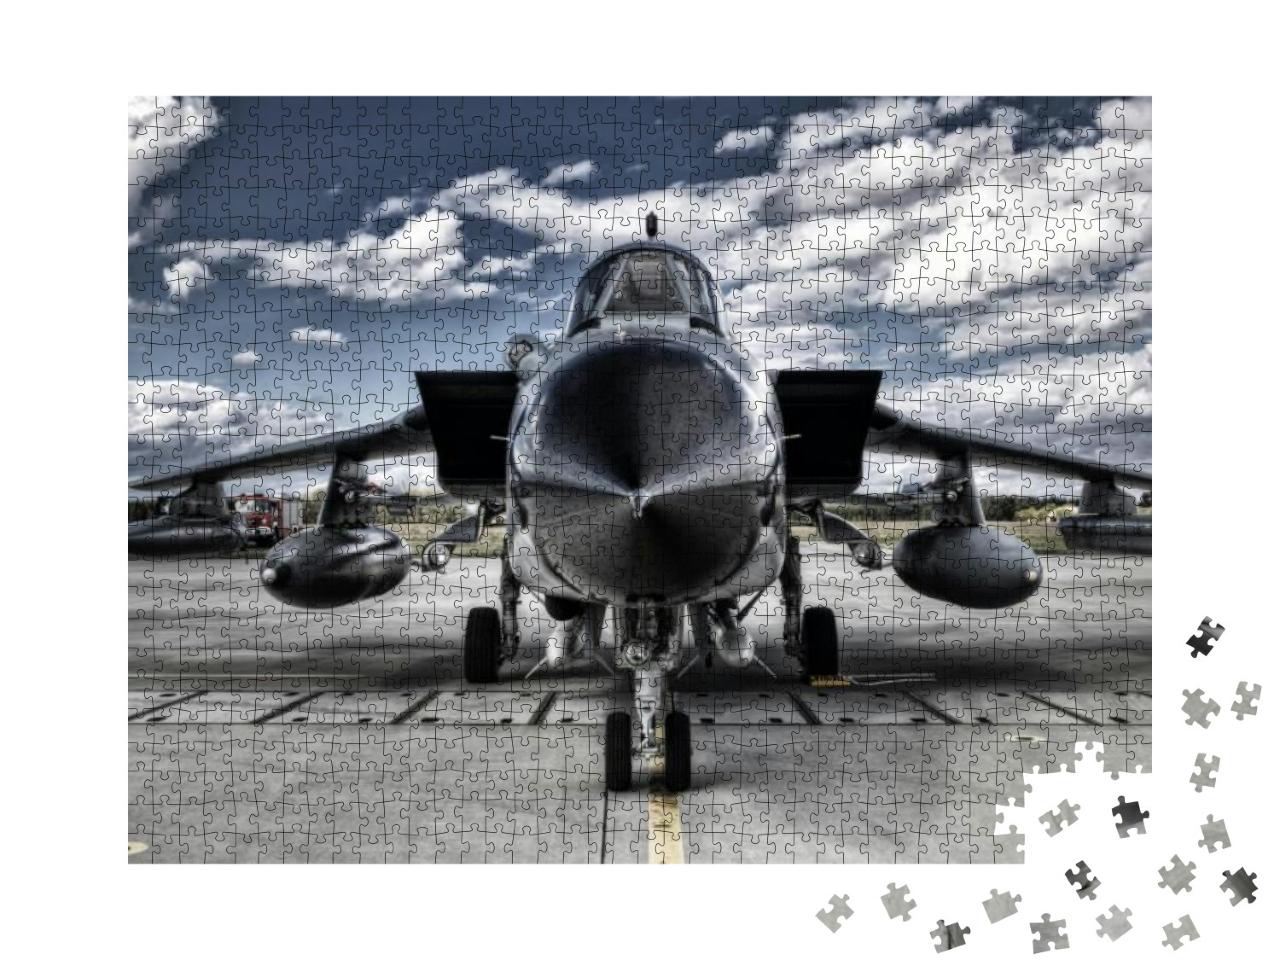 Puzzle 1000 Teile „Frontansicht eines Militärflugzeugs“